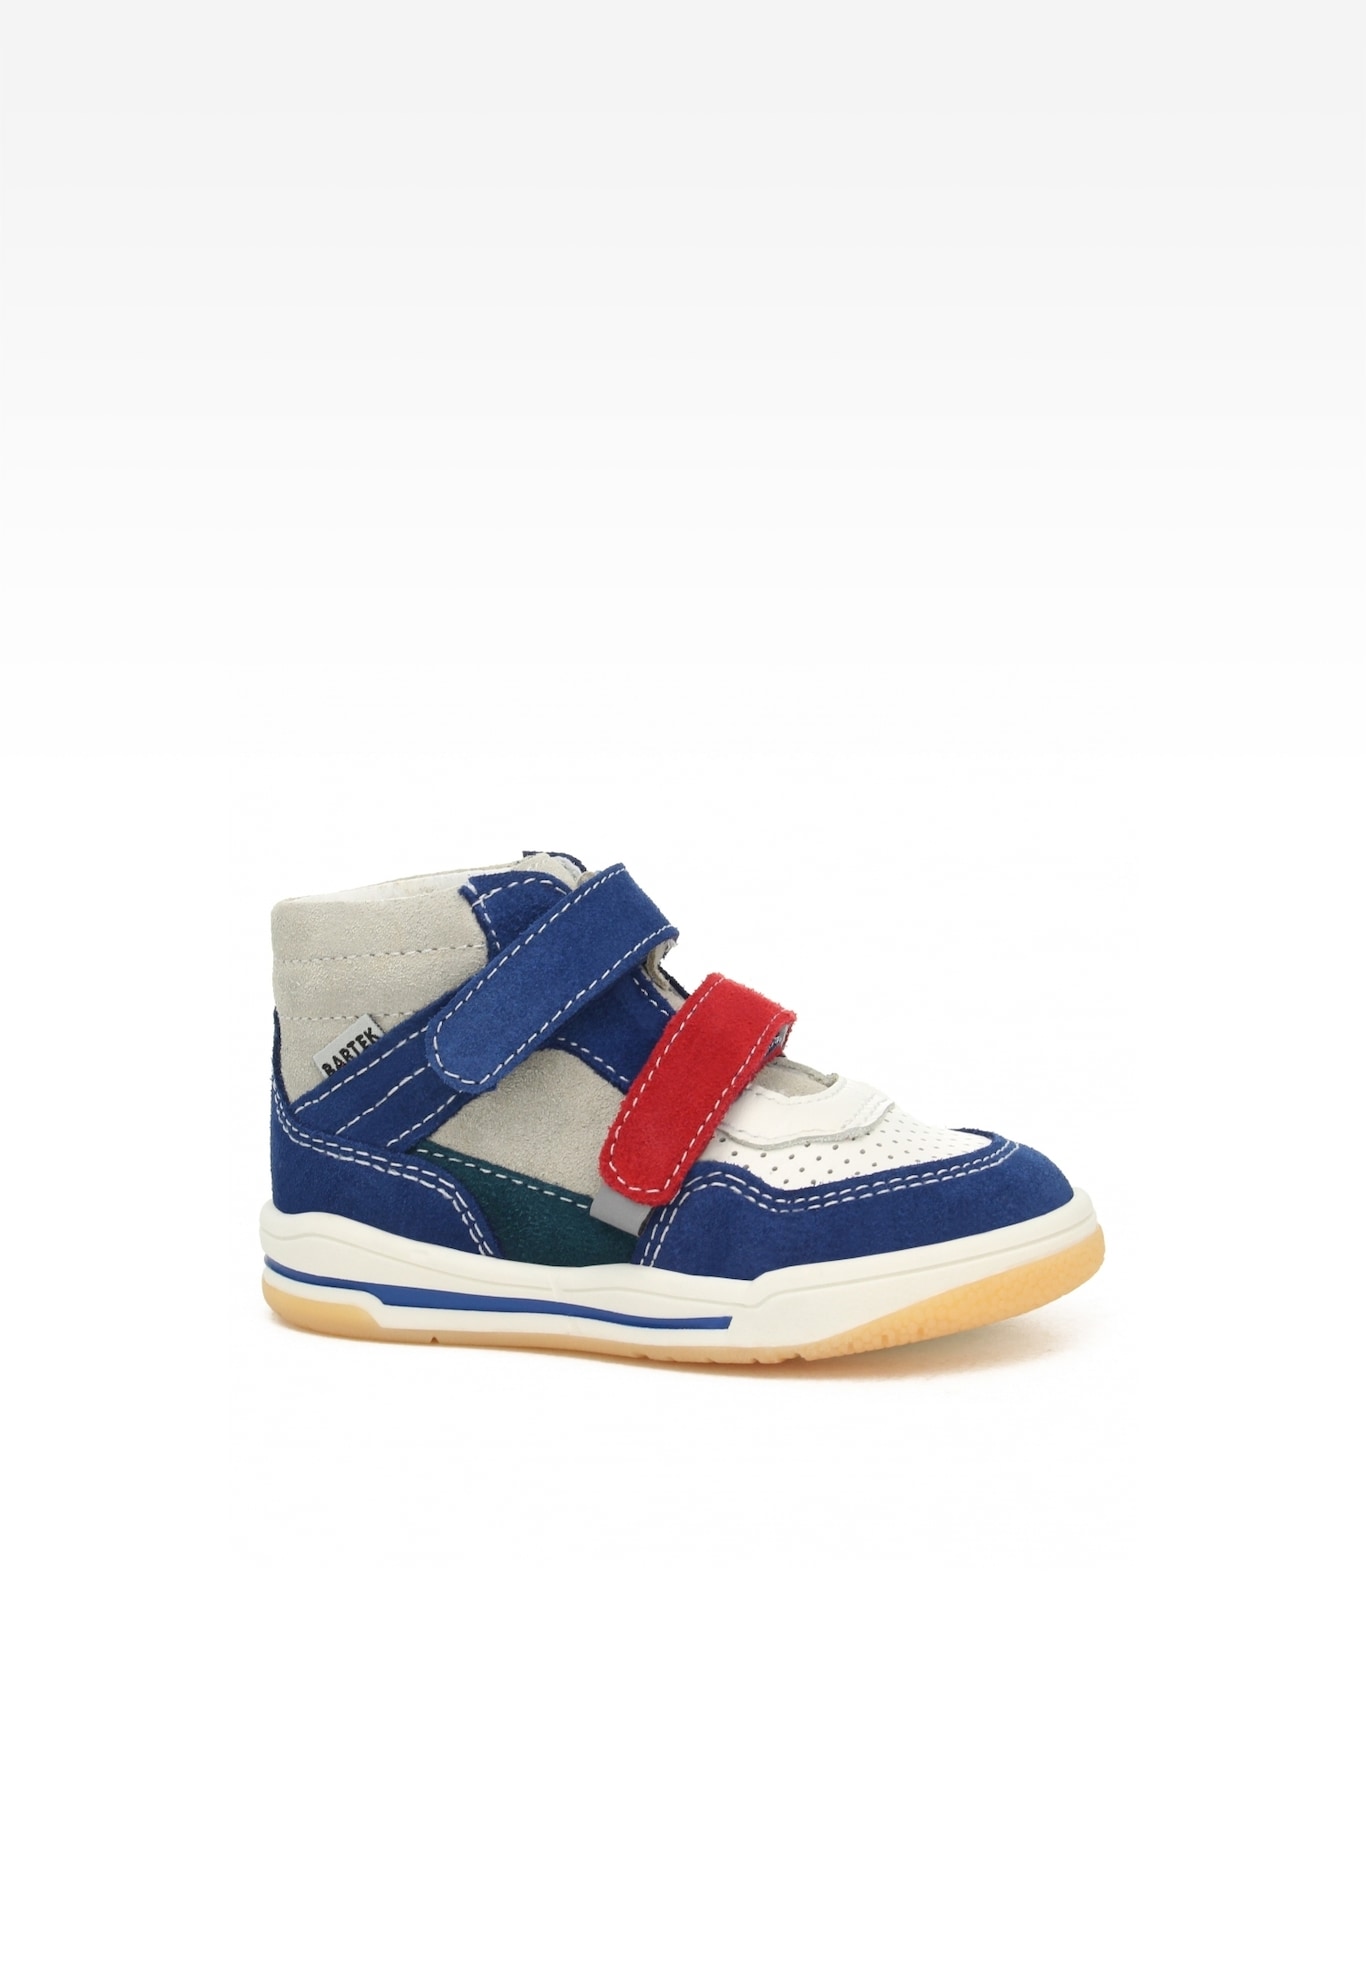 Sneakers BARTEK 116150-04, niebiesko-szaro-czerwony